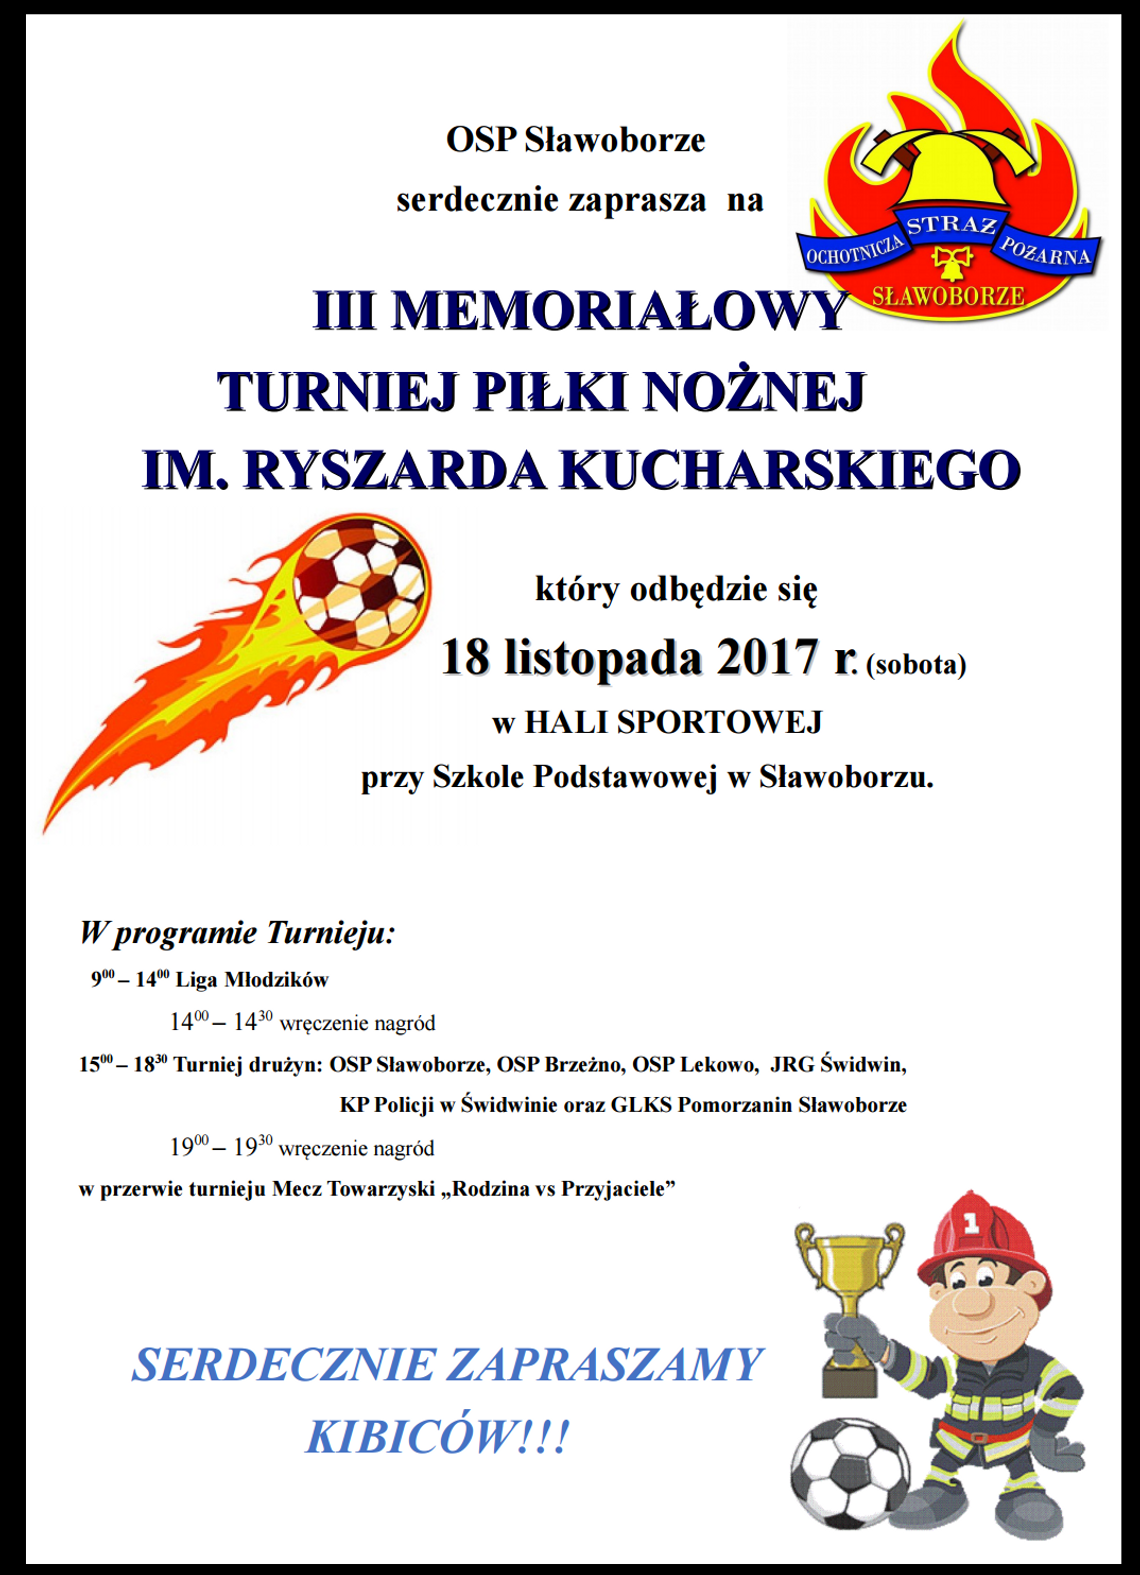 III Memoriałowy Turniej Piłki Nożnej im. Ryszarda Kucharskiego